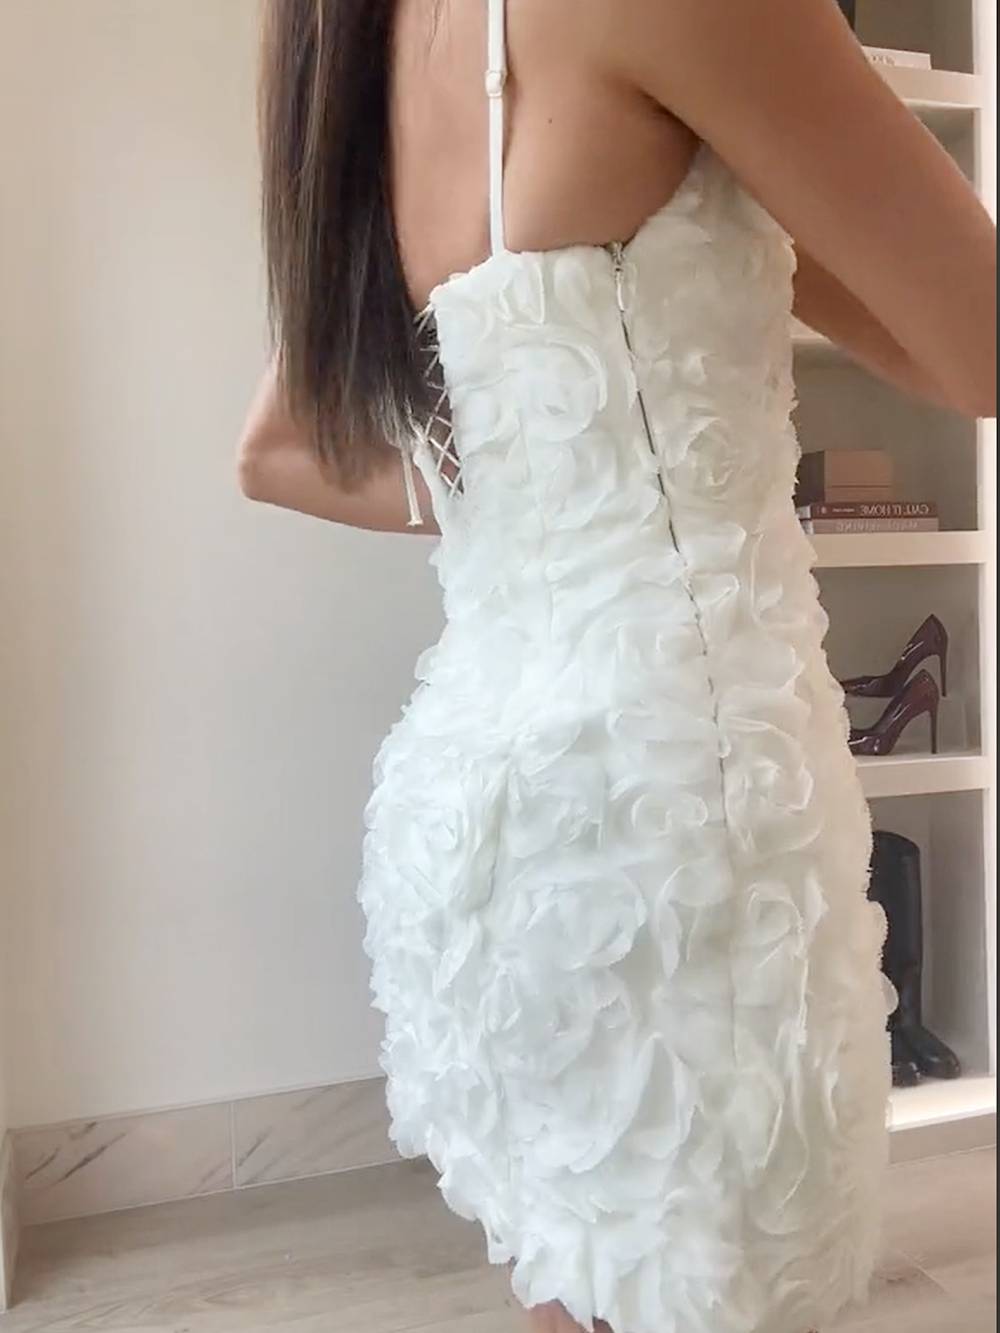 שמלת מיני מחוך באפליקציה פרחונית בצבע לבן